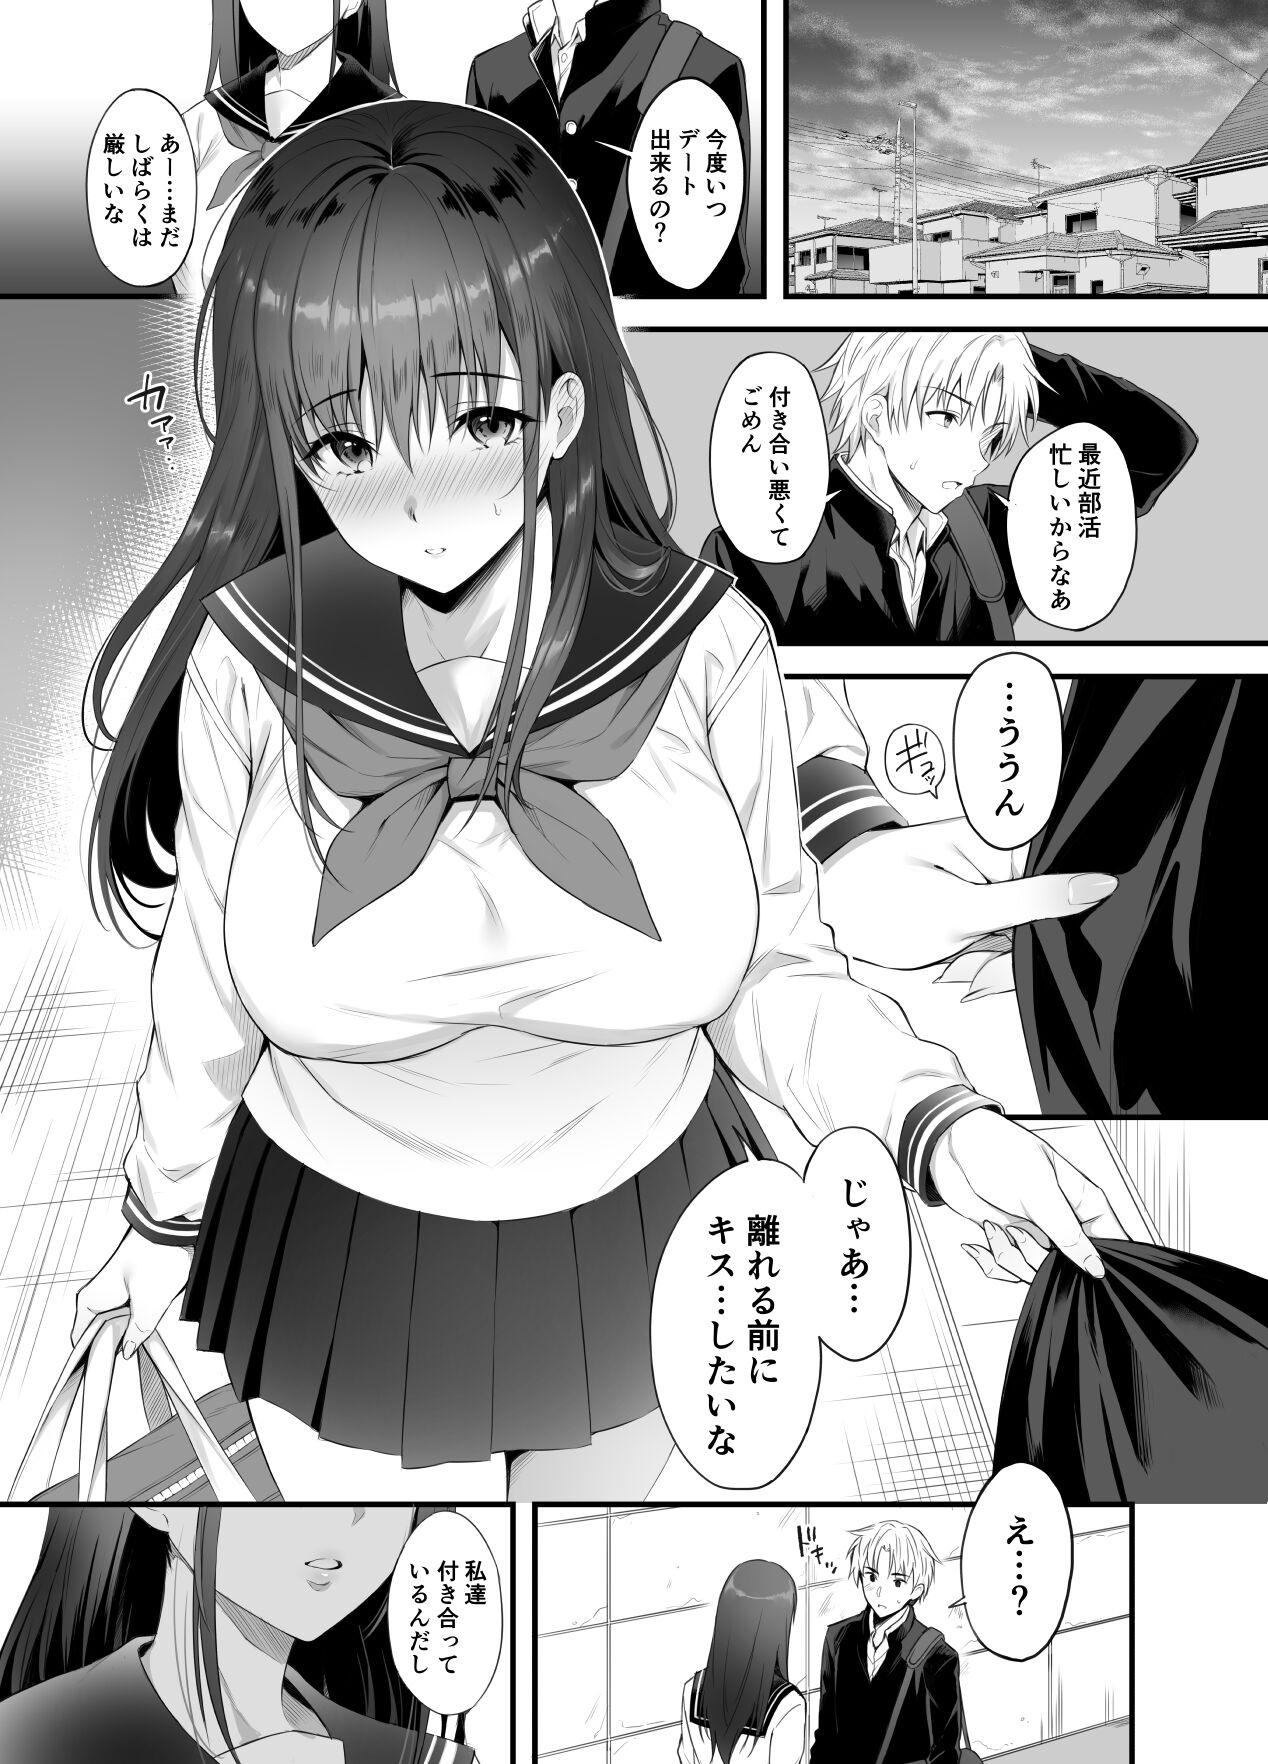 Orgy Kareshi ga Iru no ni Gifu ni Mainichi Sex o Kyouyou sarete imasu. Office Sex - Page 2